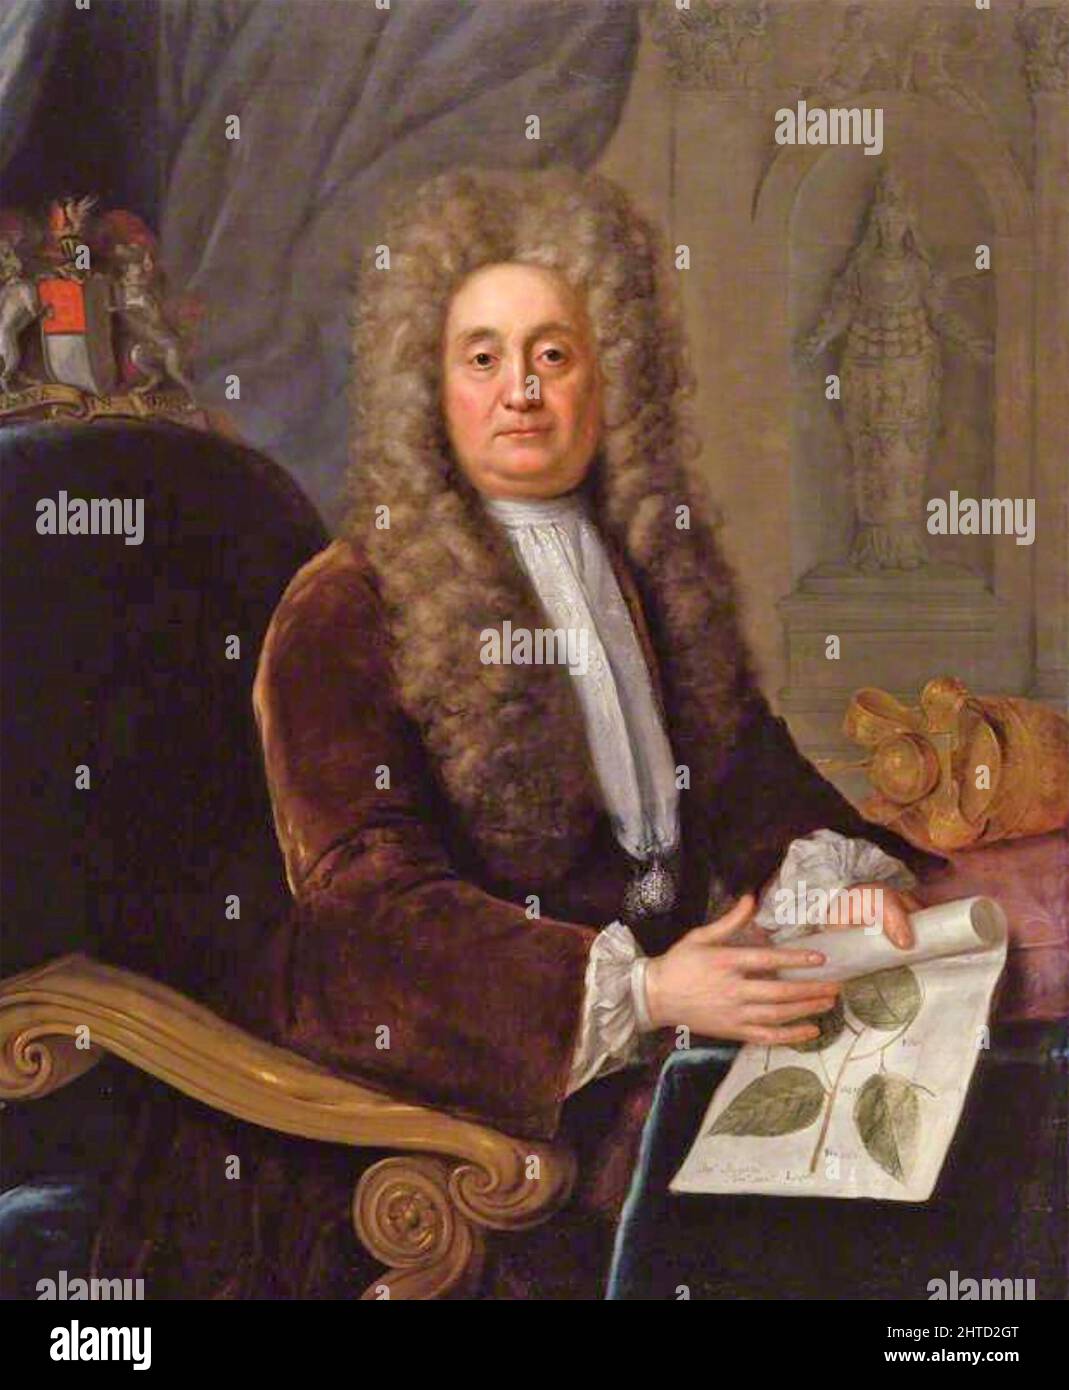 HANS SLOANE (1660-1753) médecin, naturaliste et collectionneur anglo-irlandais. Peinture de Stephen Slaughter , 1736 Banque D'Images